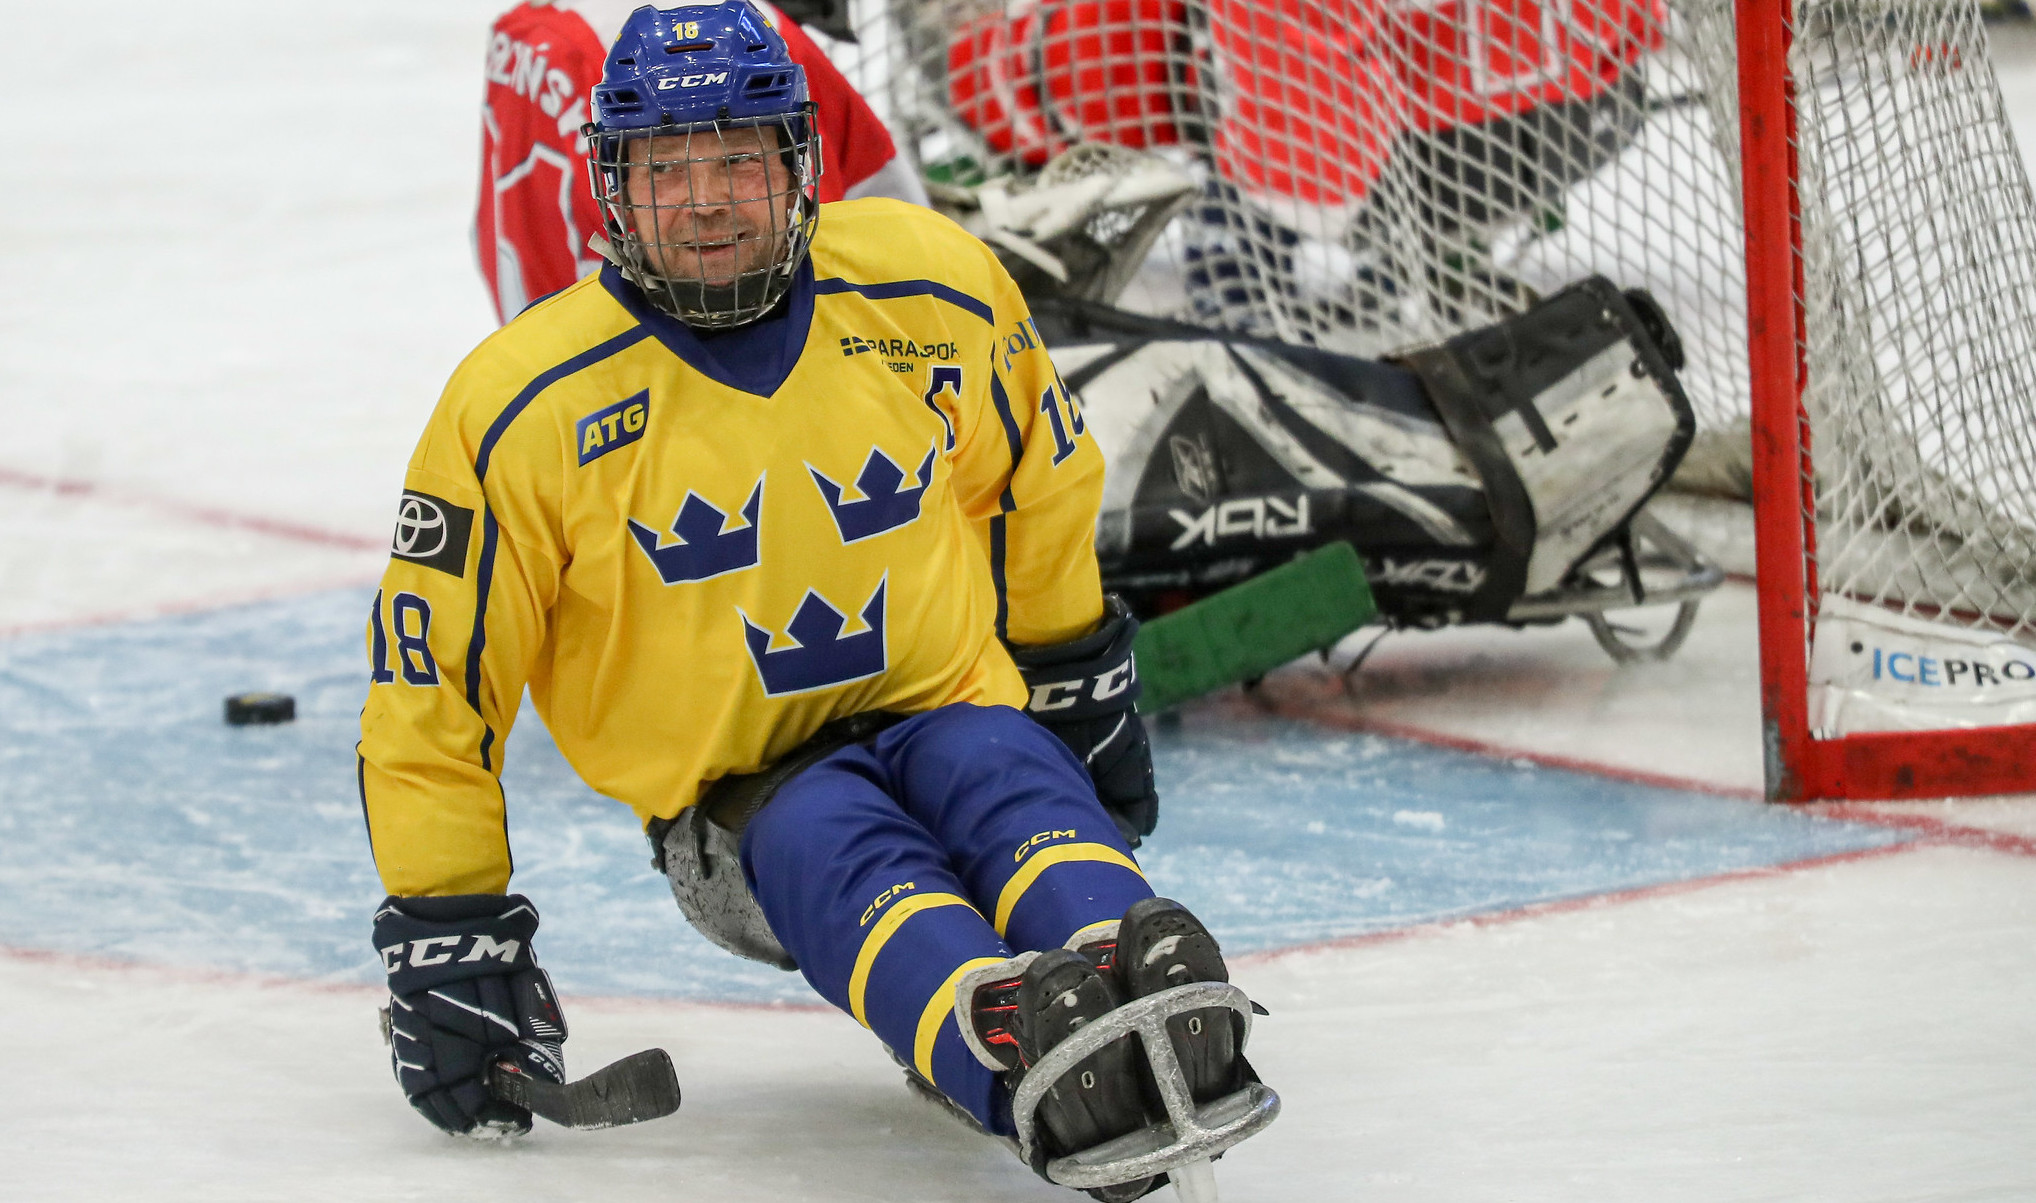 Peter Ojala, lagkapten för det svenska landslaget i paraishockey, ler efter att ha gjort mål. 